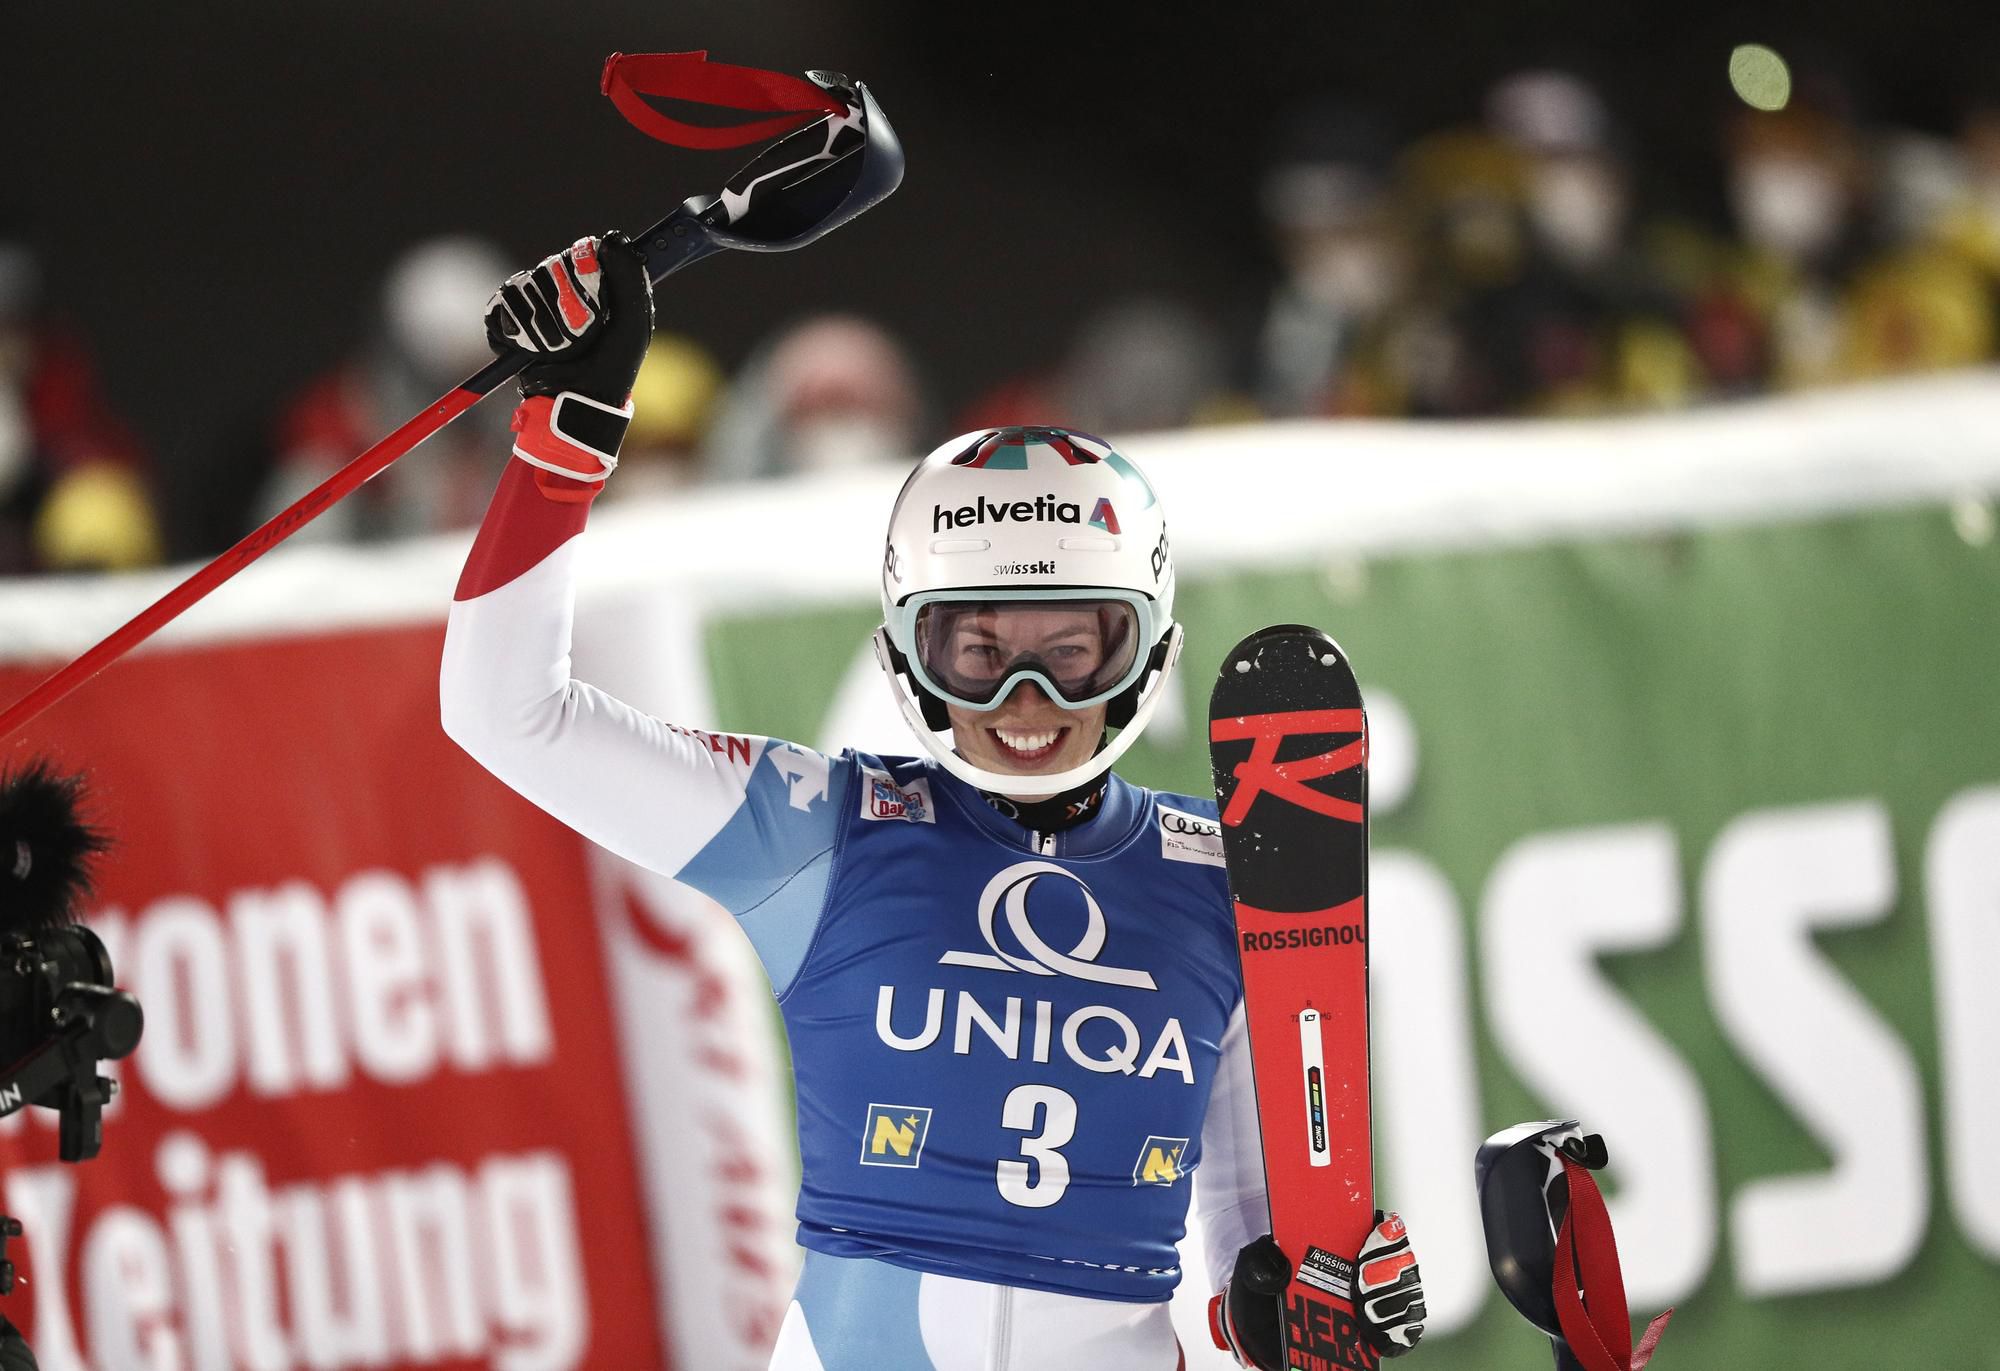 Švajčiarka Michelle Gisinová sa raduje z víťazstva v slalome v rakúskom Semmeringu